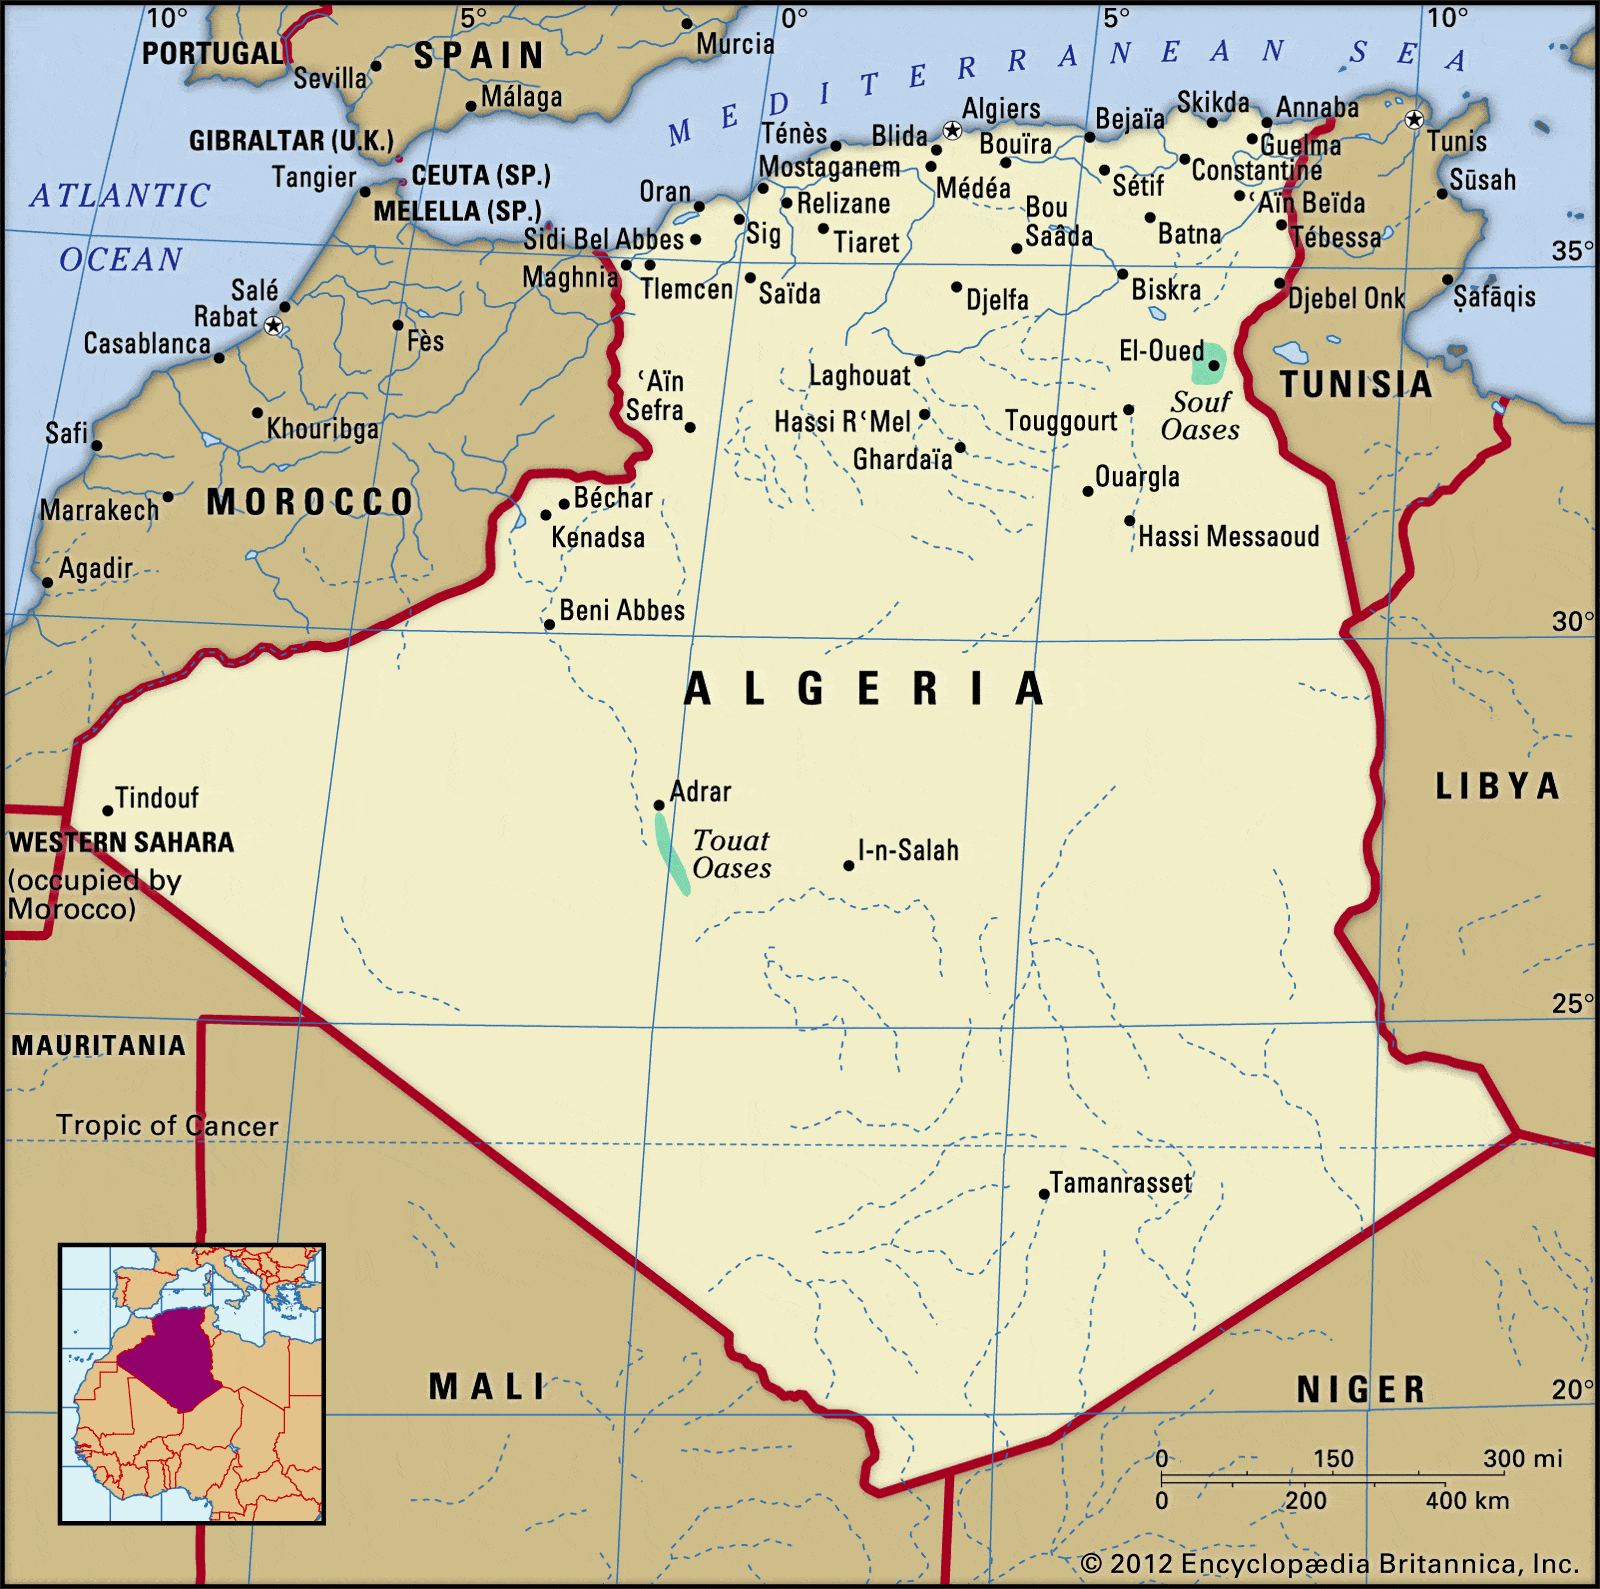 upvc ball valve Manufacturer in algeria, Libya, Mali, Morocco, Spain